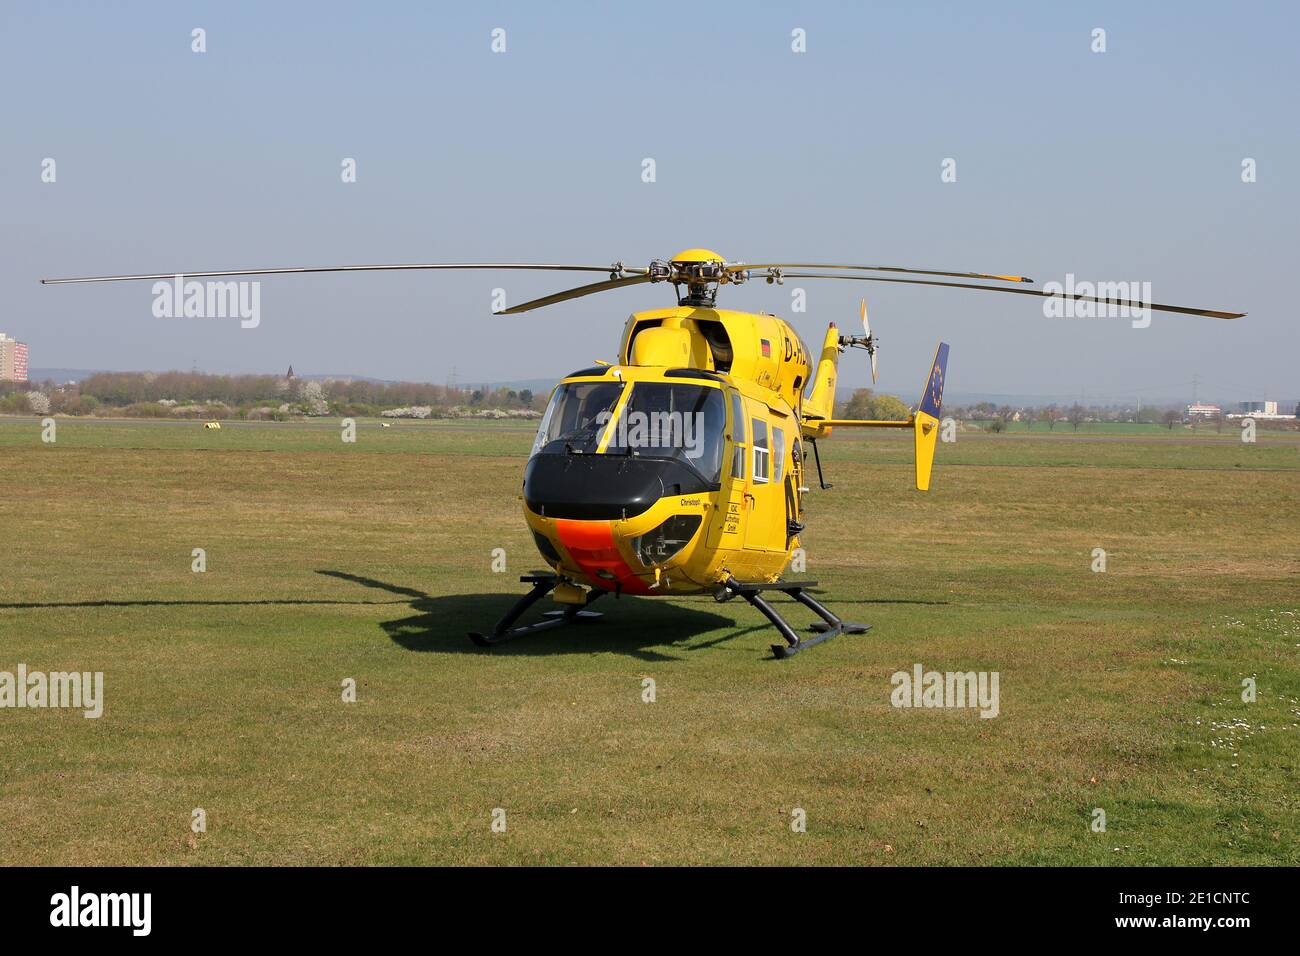 MBB BK 117B-2 hélicoptère de sauvetage ADAC Luftrettung avec enregistrement D-HDPS à l'aéroport de Bonn Hangelar. Banque D'Images